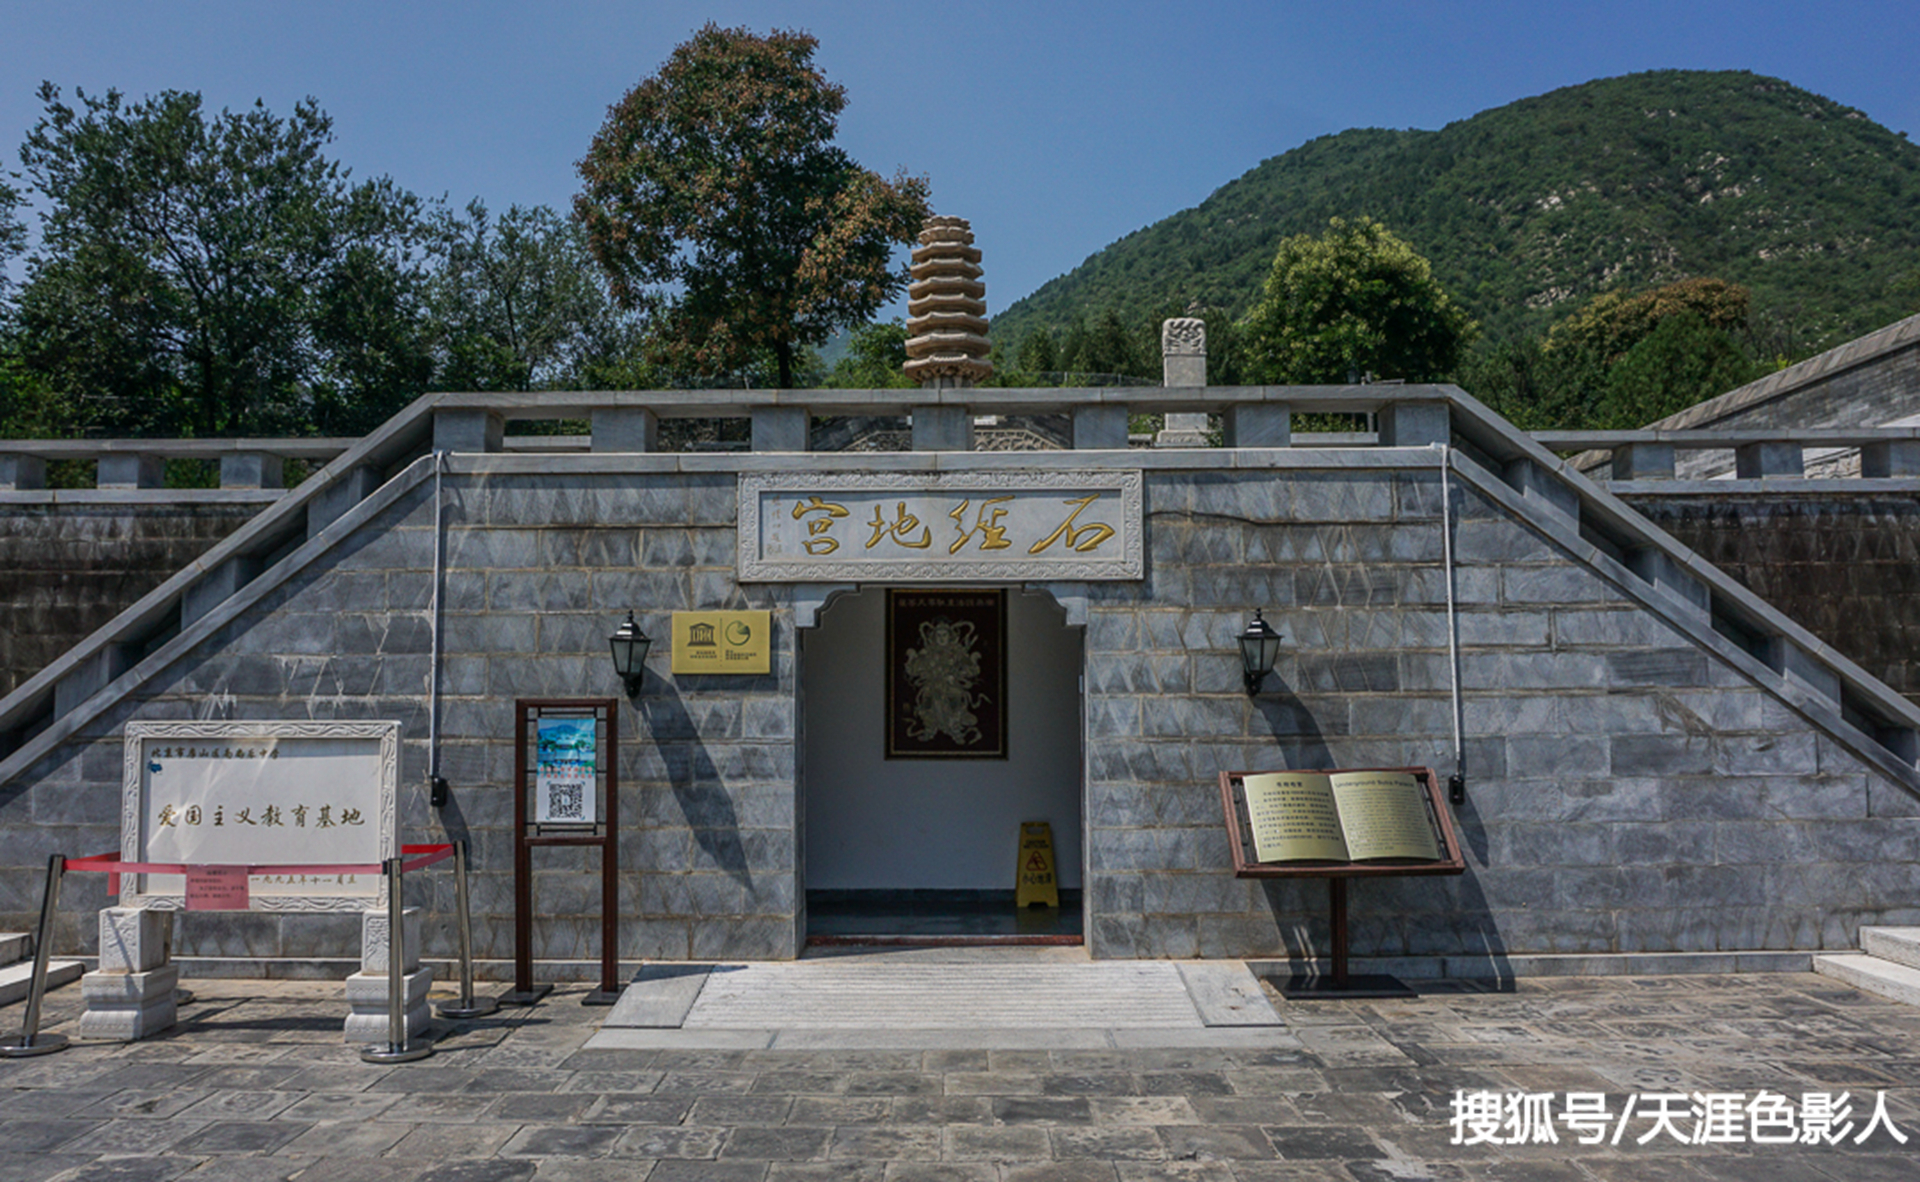 北京云居寺上万块石经是如何出土和保存的呢